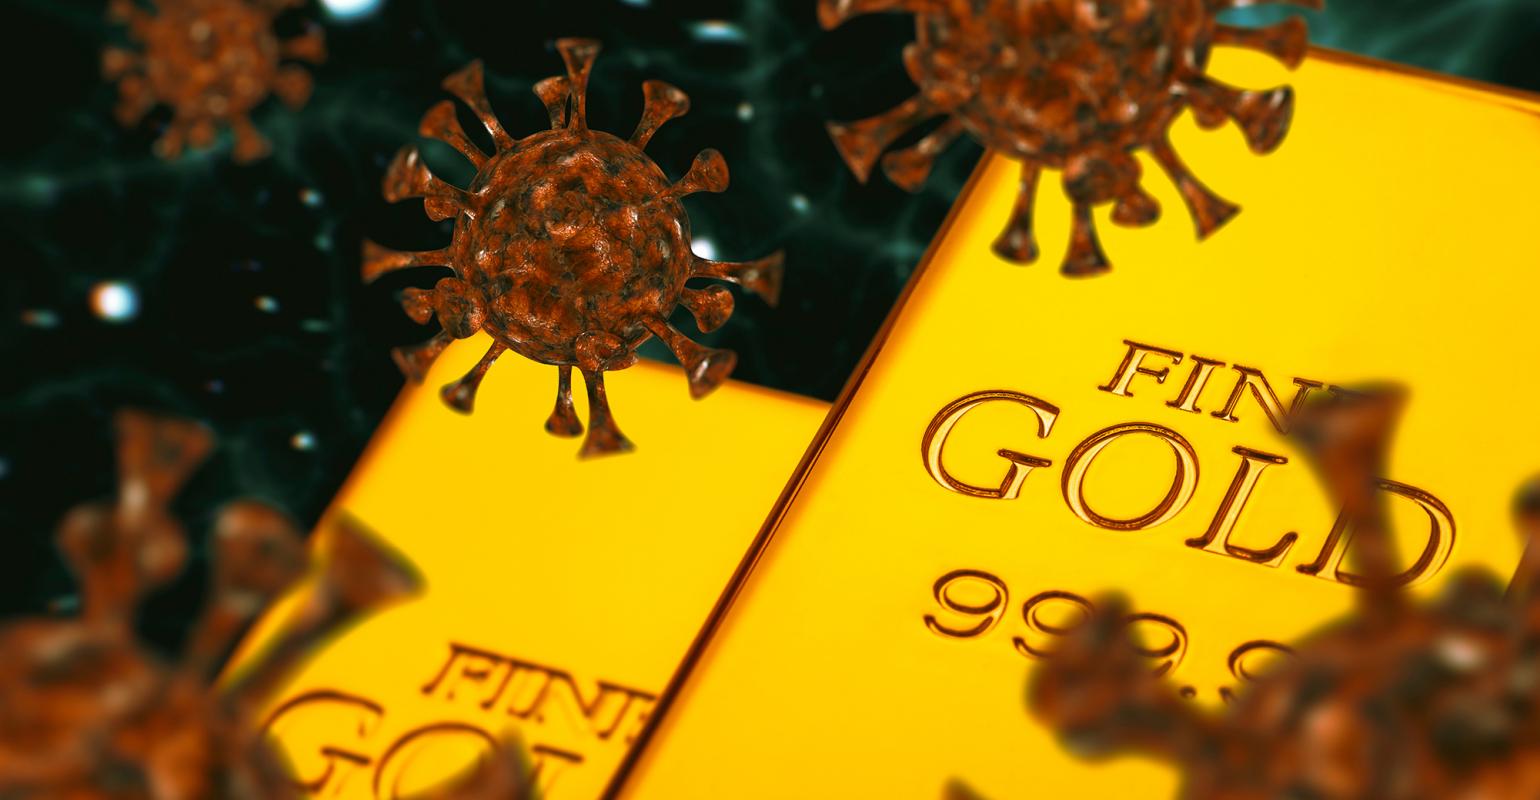 الحرب وسعر الذهب - سعر الذهب بعد الحرب - ارتفاع الذهب بعد الحرب